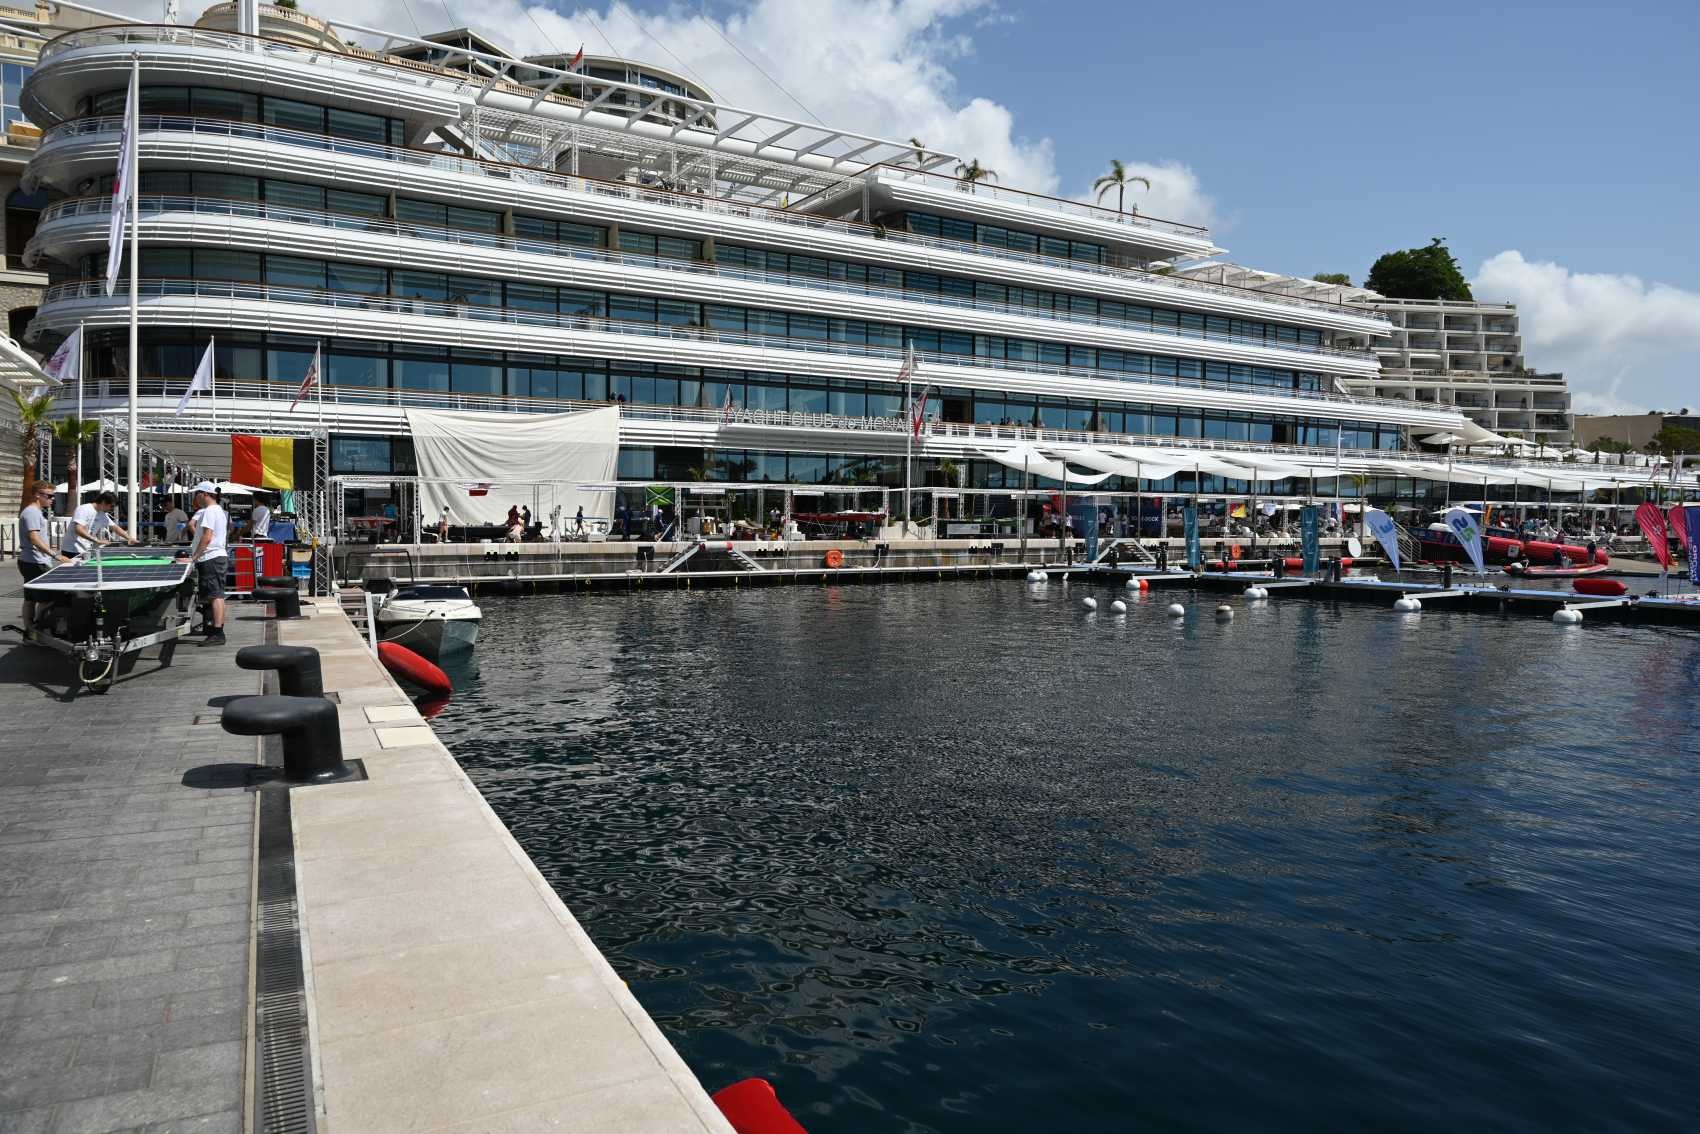 Les paddocks de bateaux électriques devant le prestigieux Yacht Club de Monaco